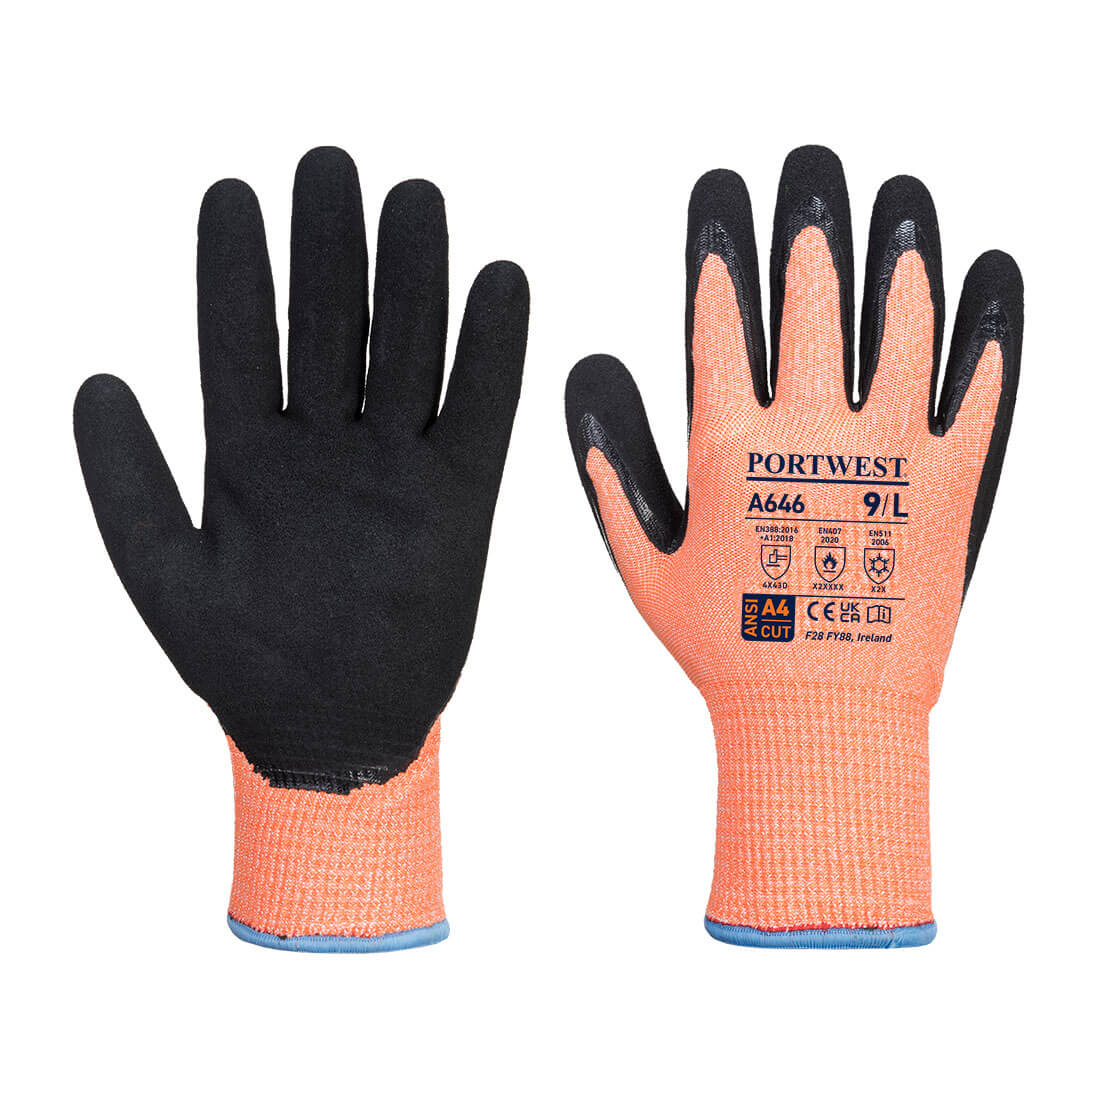 A646 Portwest® Vis-Tex Winter HR Cut Safety Work Gloves